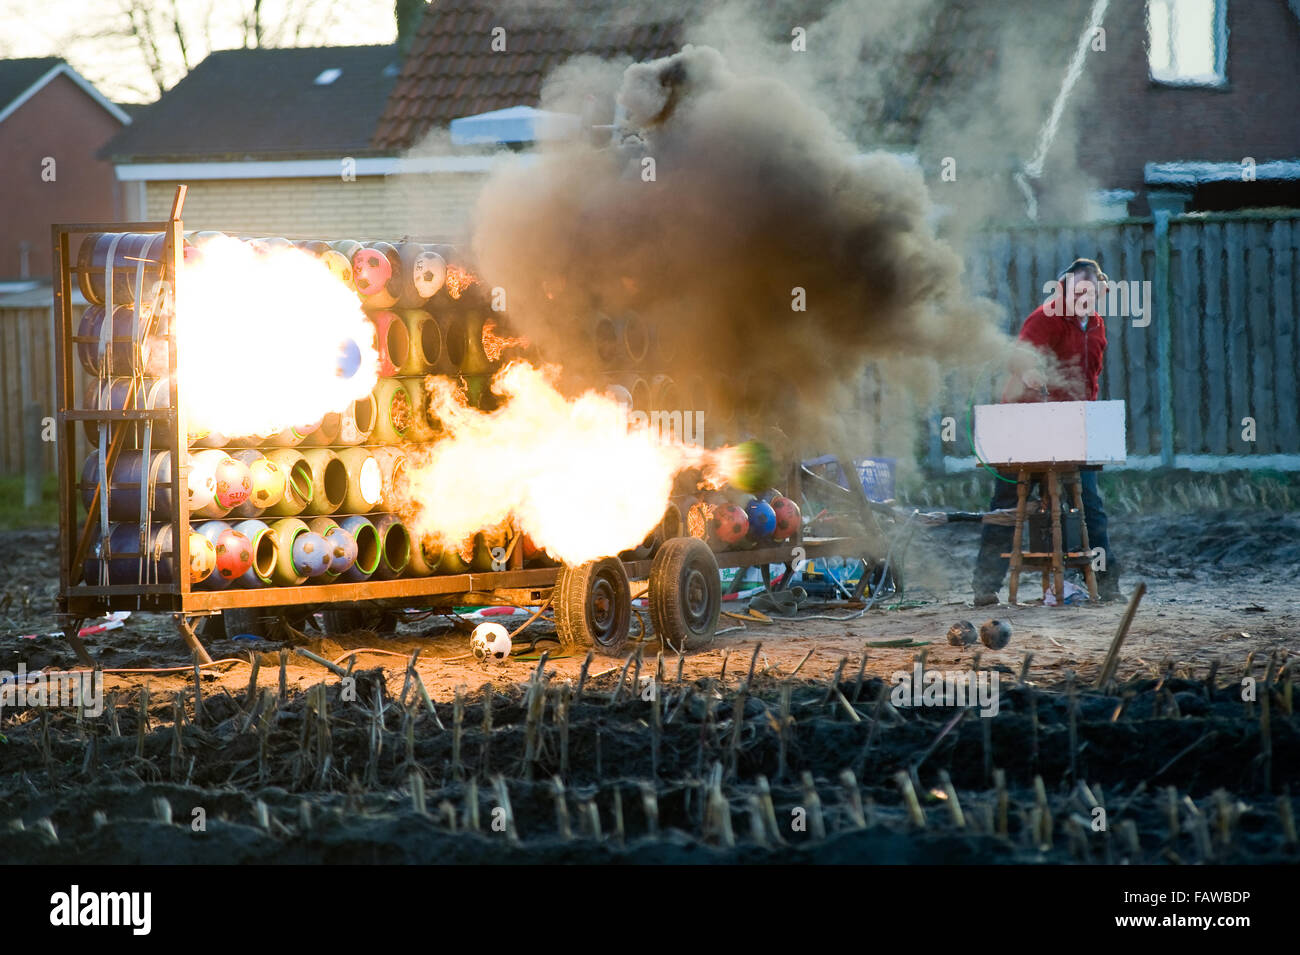 ENSCHEDE, Niederlande - 31. Dezember 2015: Hartmetall explodiert ist eine Tradition auf Vorabend des neuen Jahres in den Niederlanden und Belgien. Stockfoto